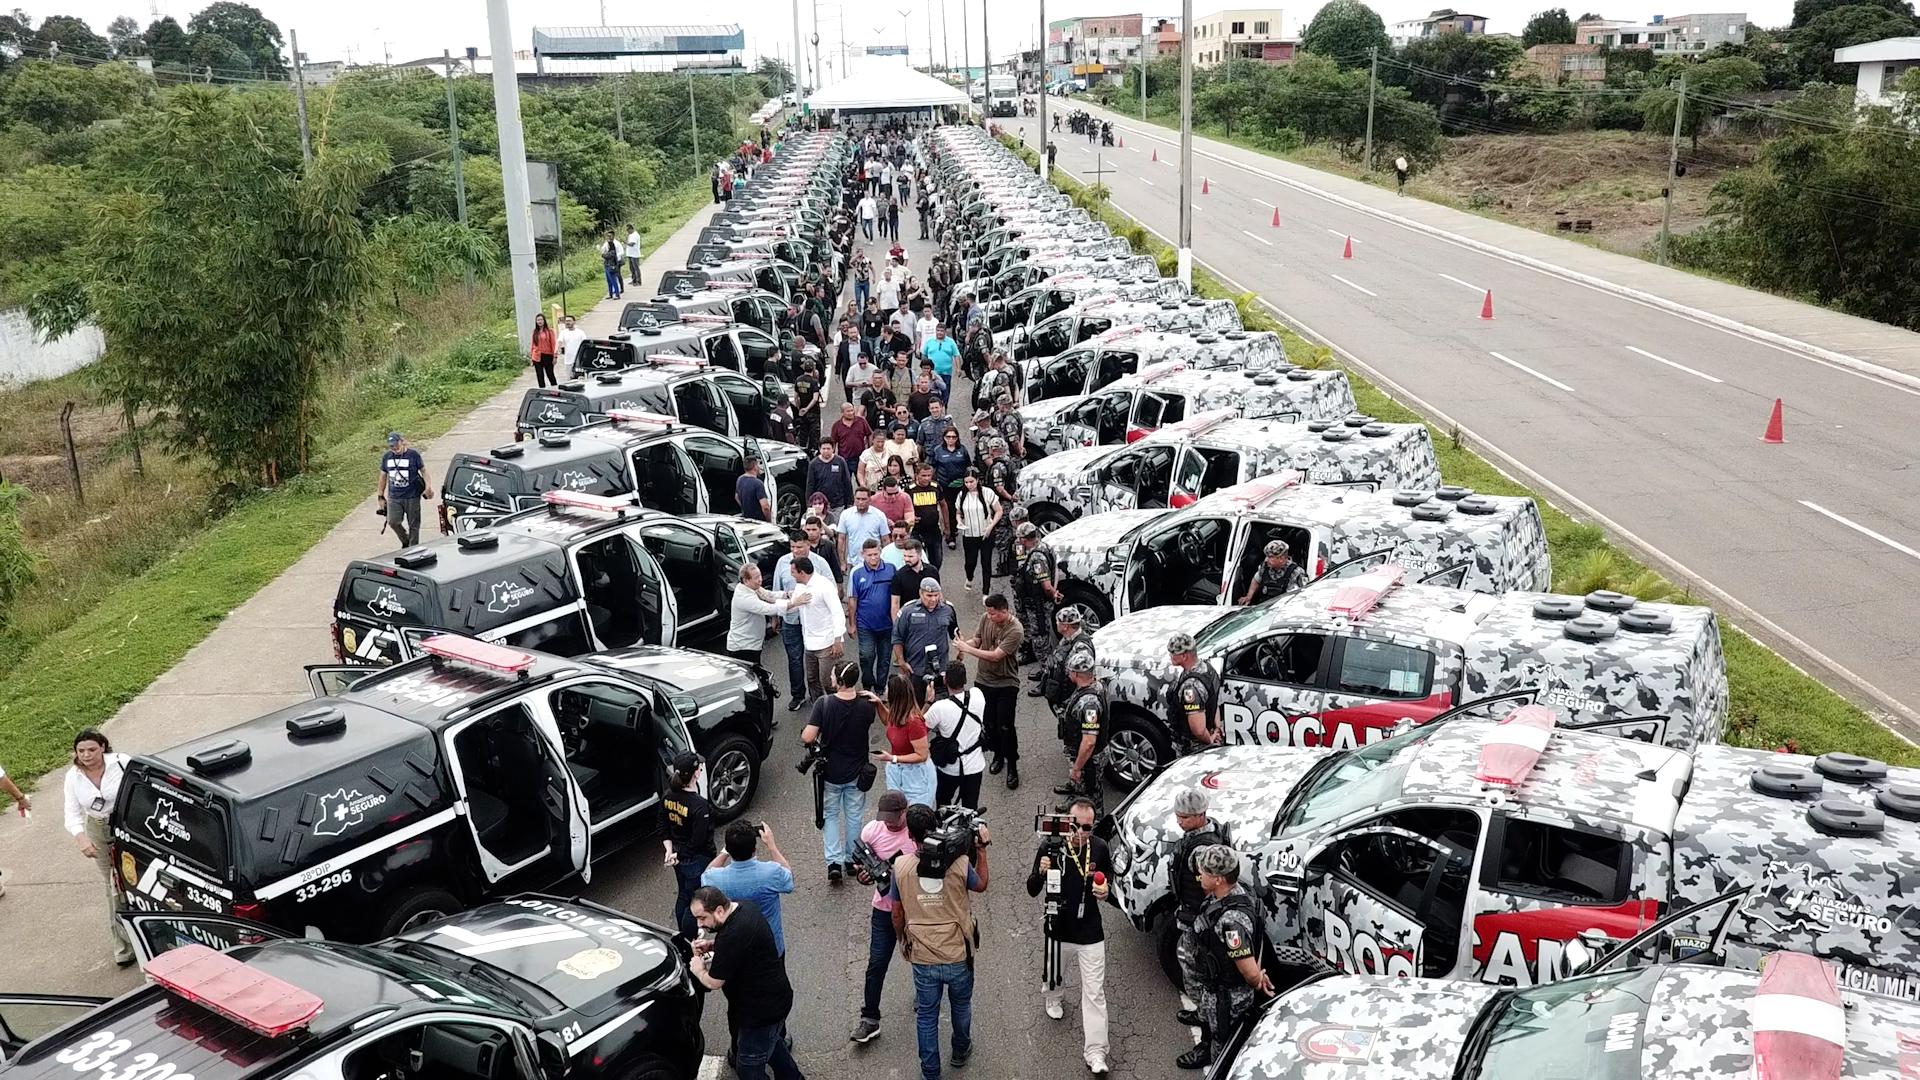 Governador Wilson Lima reforçar a segurança em Manaus com entrega de 61 viaturas às Polícias Civil e Militar